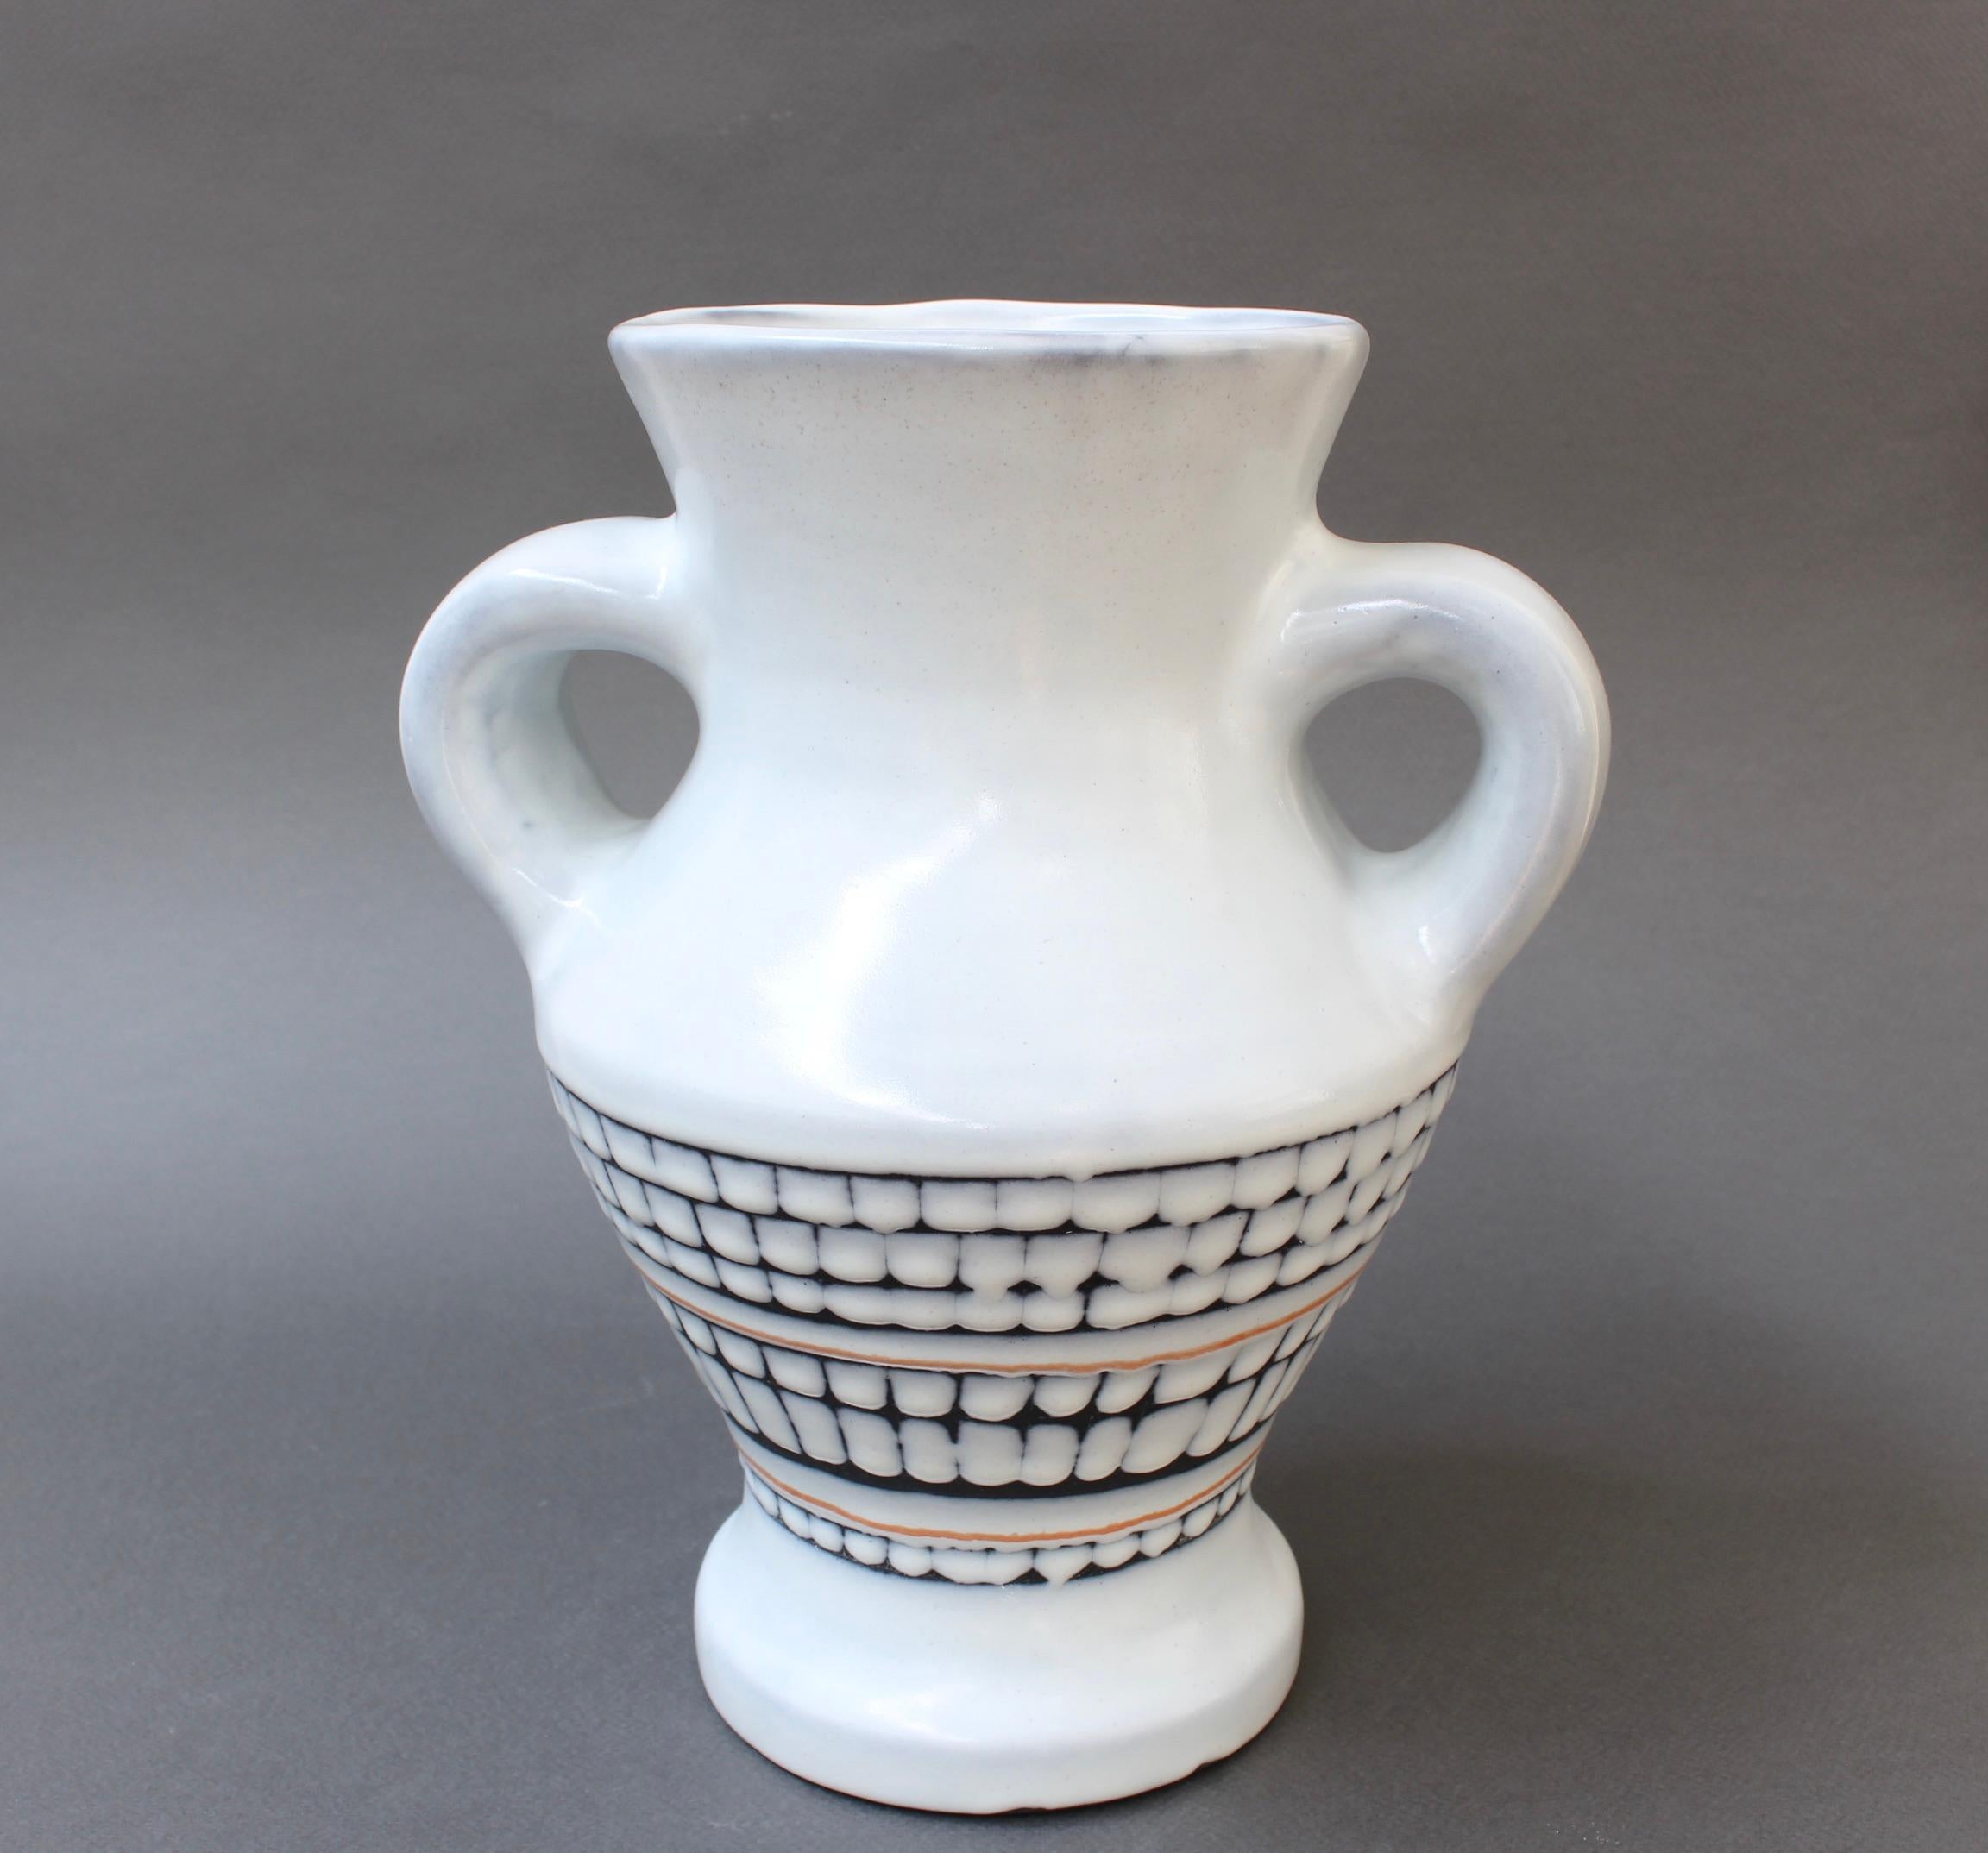 Un vase vintage en céramique avec des poignées de style classique par le maître céramiste, Roger Capron (vers 1950). En très bon état général, le fond blanc crayeux est décoré d'un motif de carreaux à partir de la partie centrale. Il est aujourd'hui